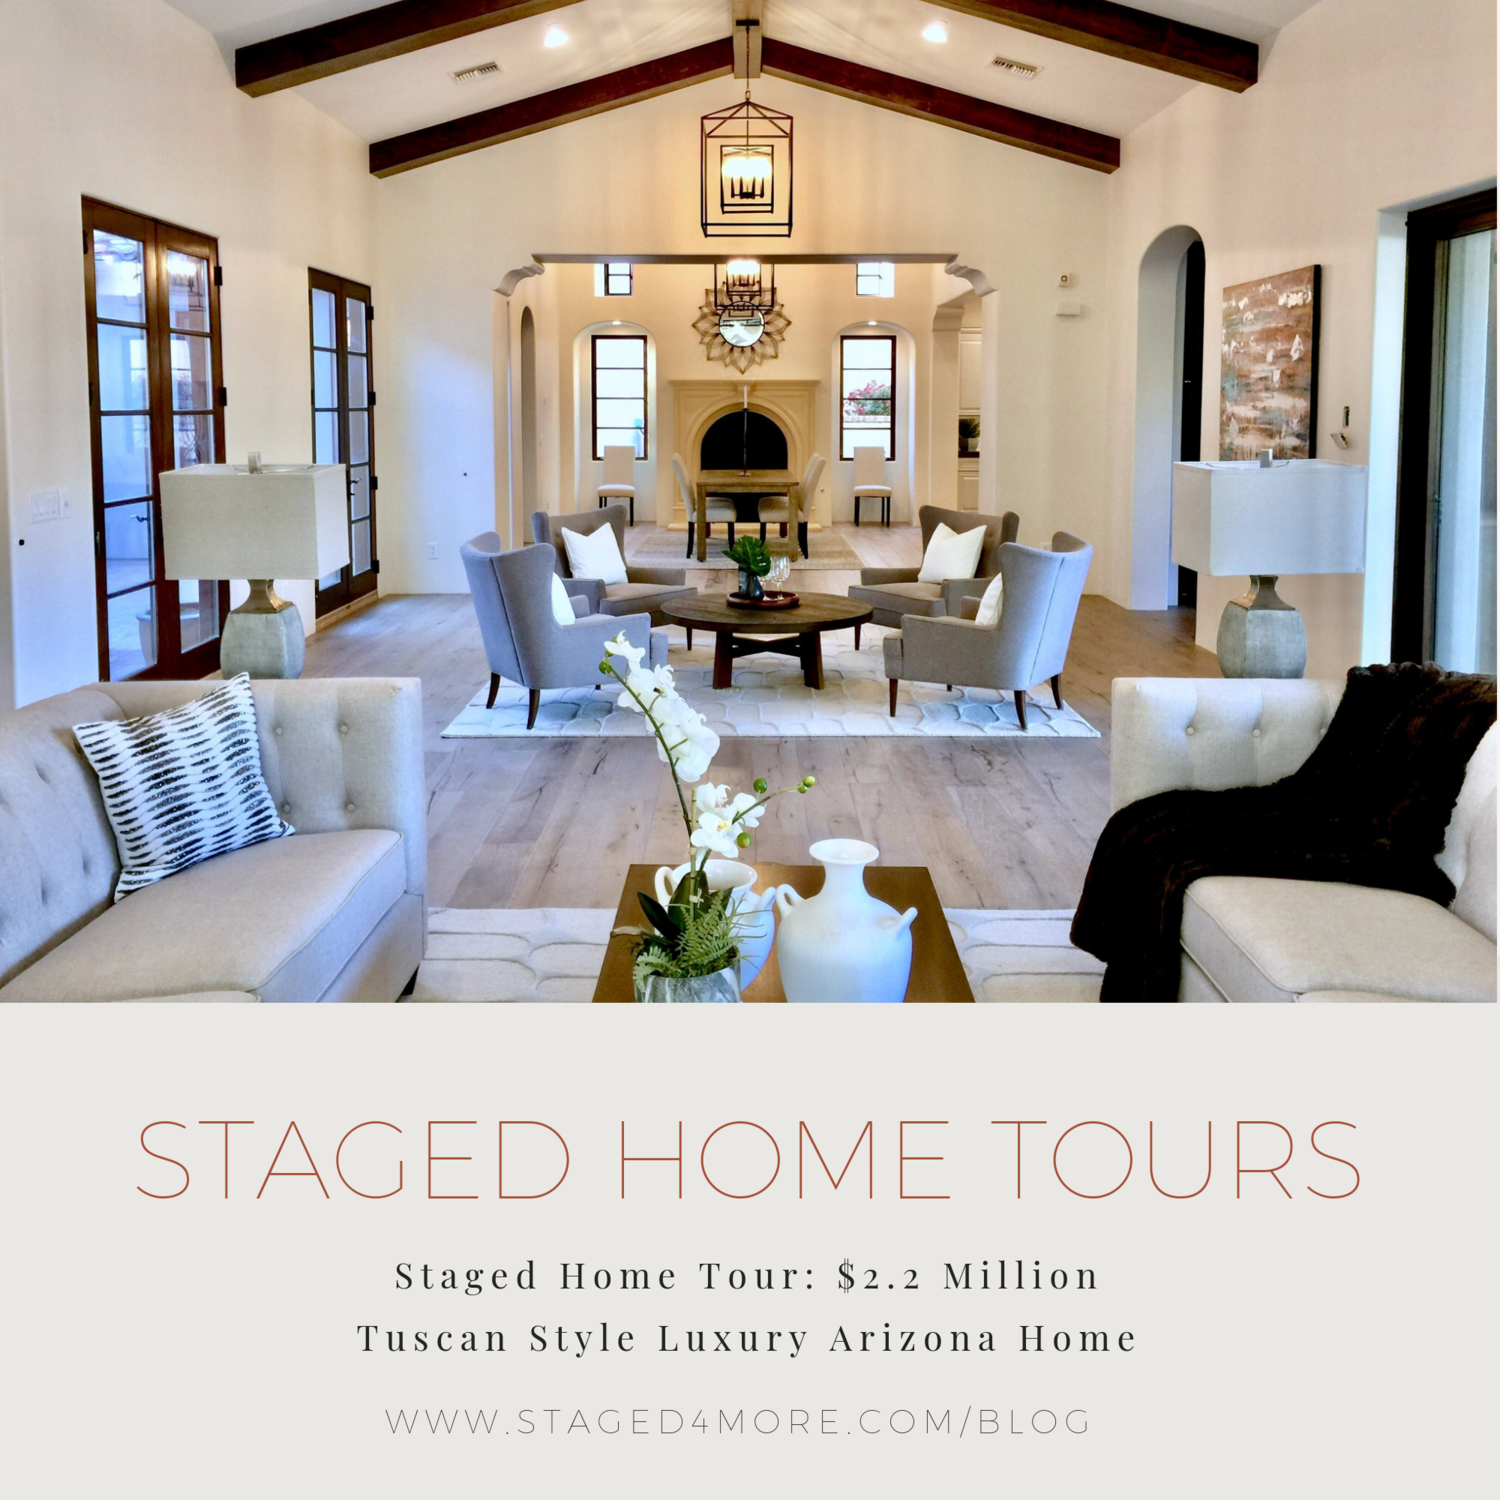 Staged Home Tour: $2.2 Million Tuscan Style Luxury Arizona Home